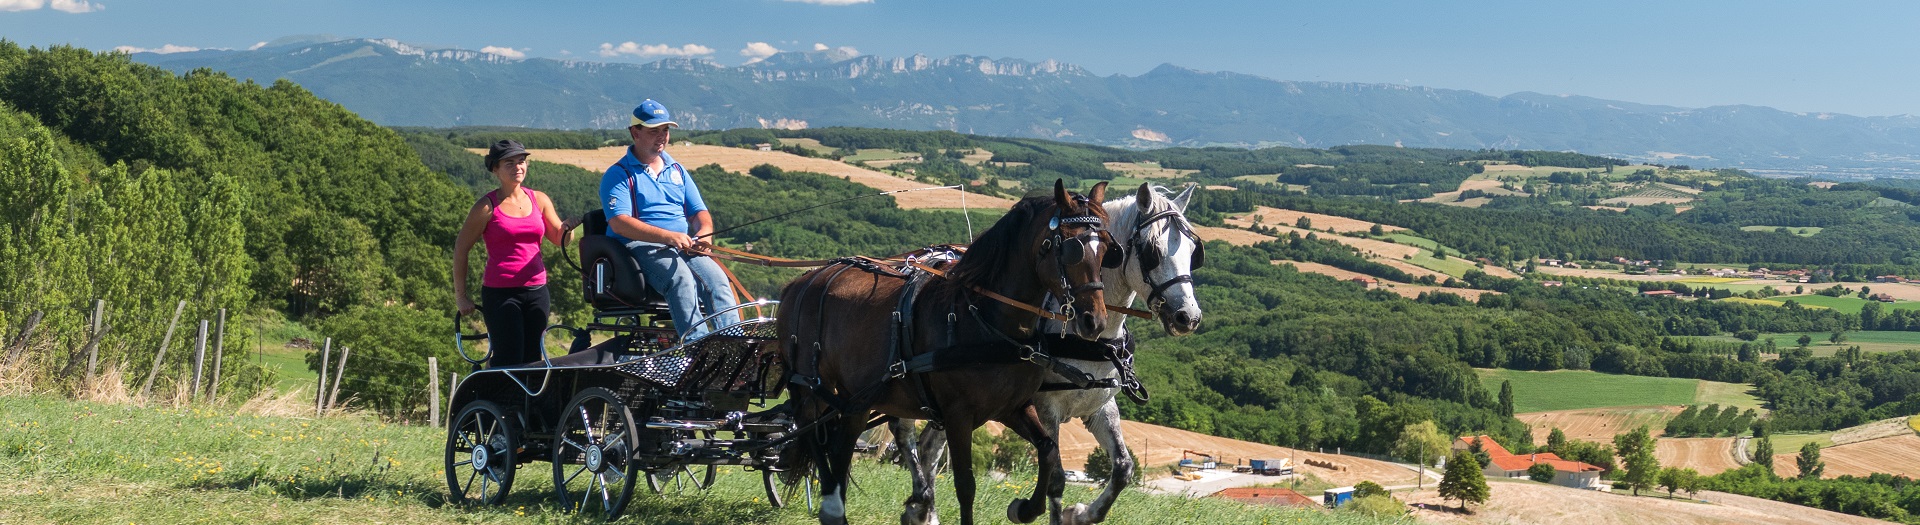 Cavaliers en attelage dans la Drome, vue sur les collines